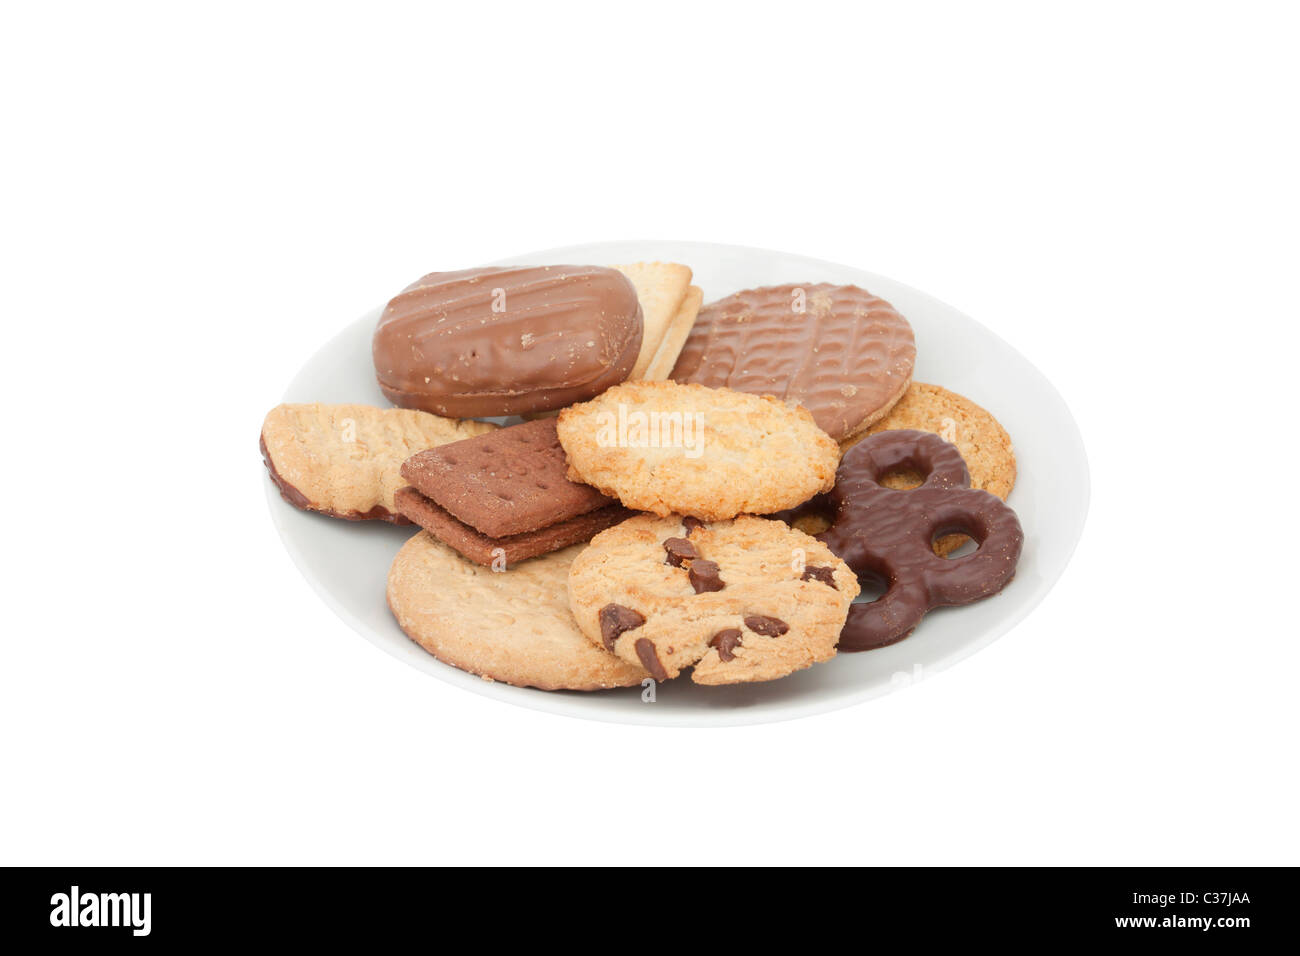 Différents types de biscuits sur une plaque sur un fond blanc Photo Stock -  Alamy